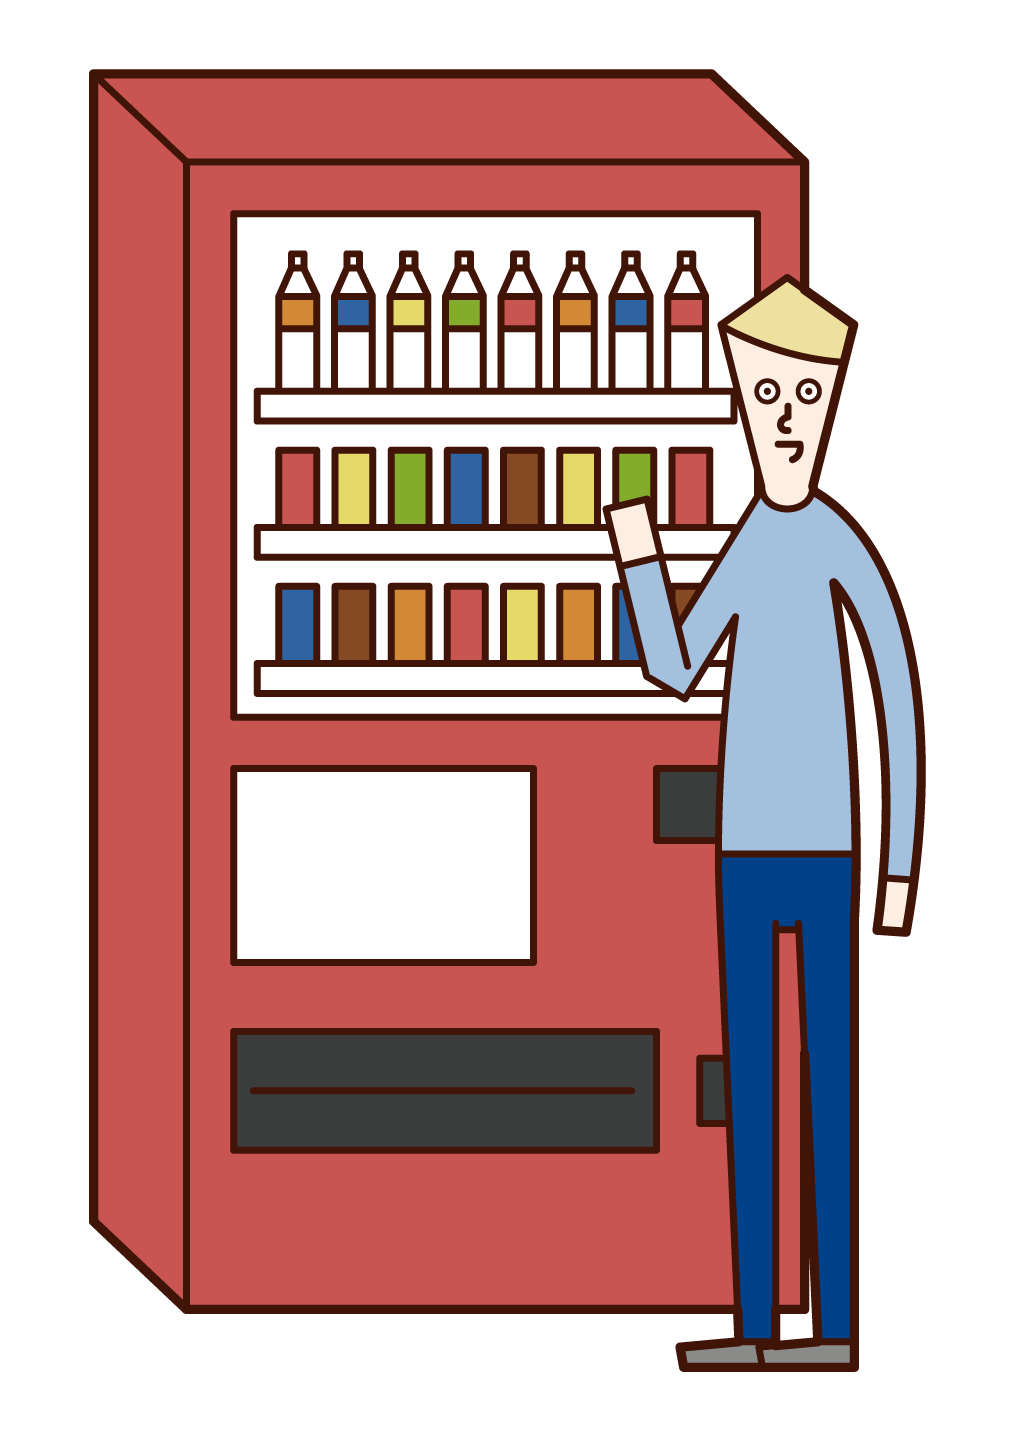 자동판매기에서 음료를 구입한 사람(남성)의 일러스트